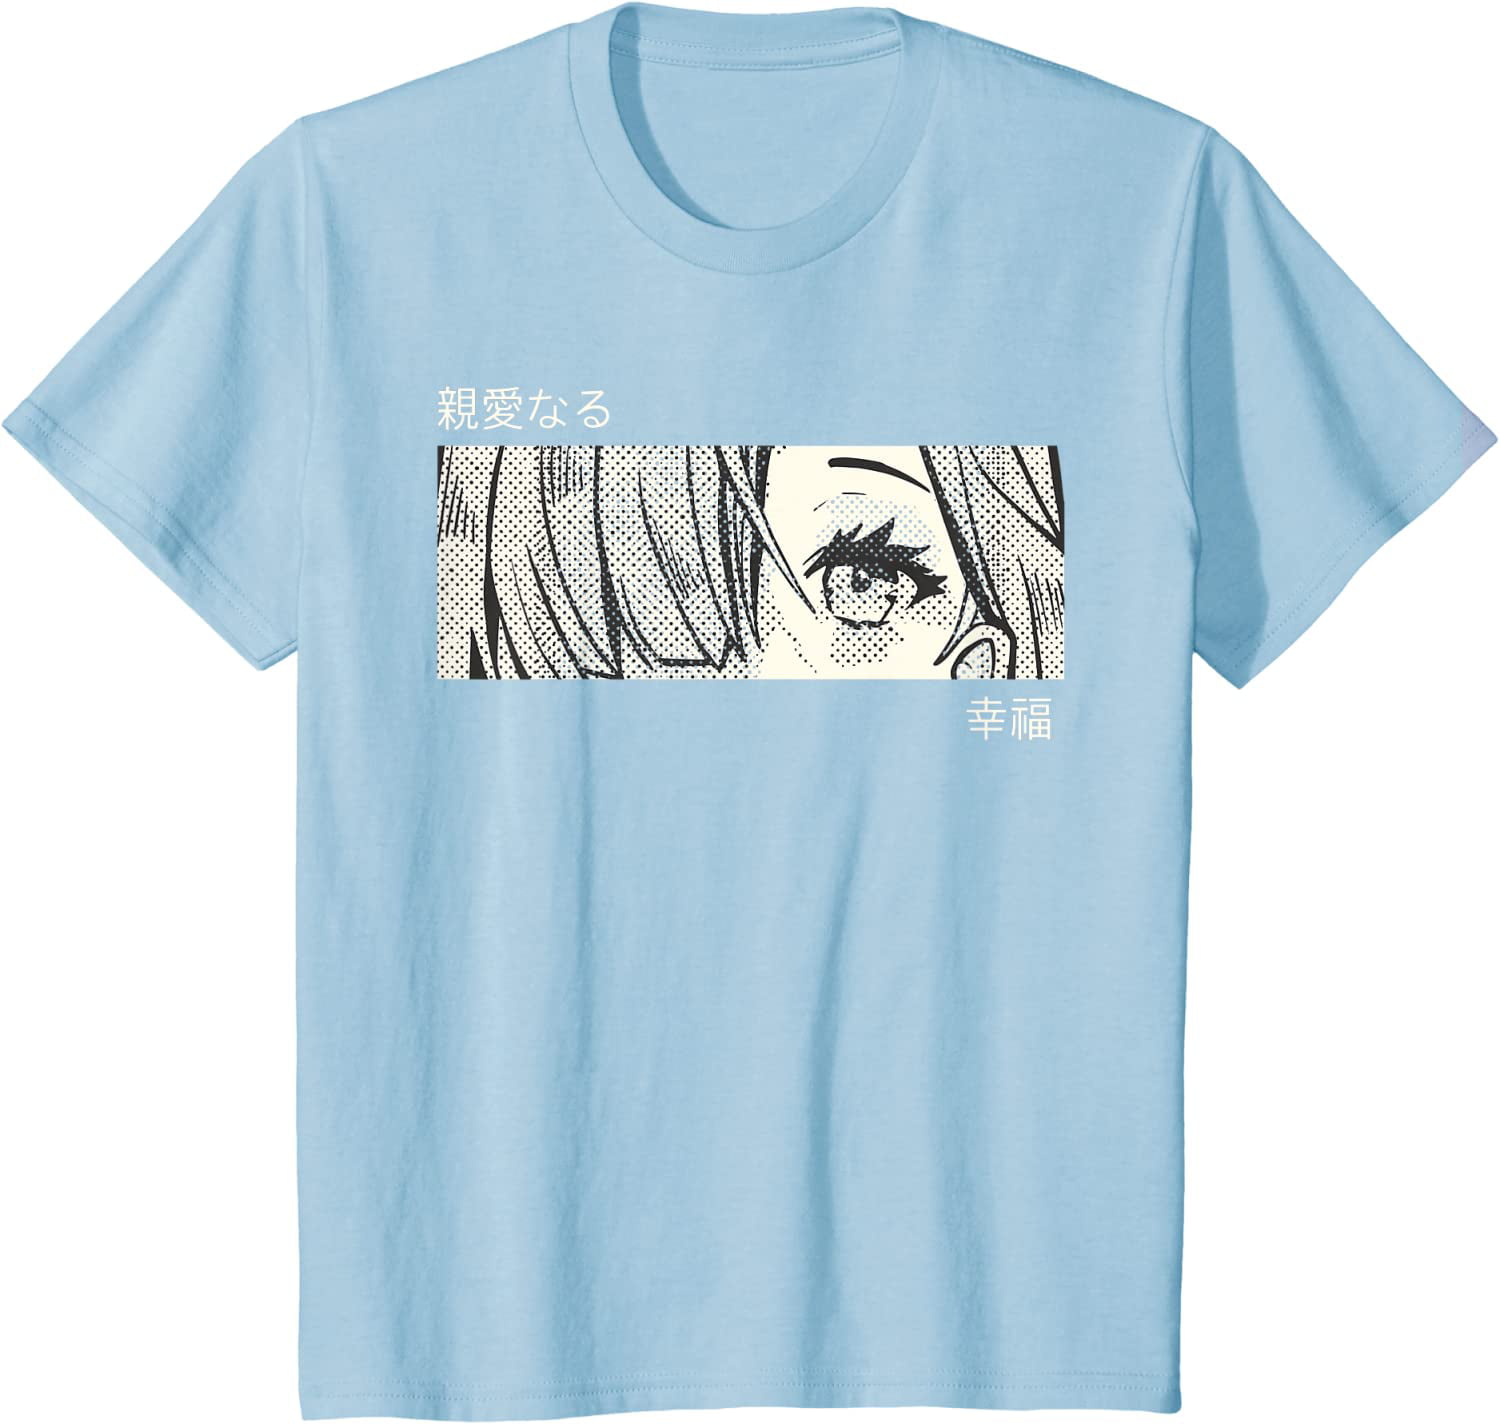 Unisex Japanese Manga Art T-Shirt - Aesthetic Anime Clothing - Bluefink